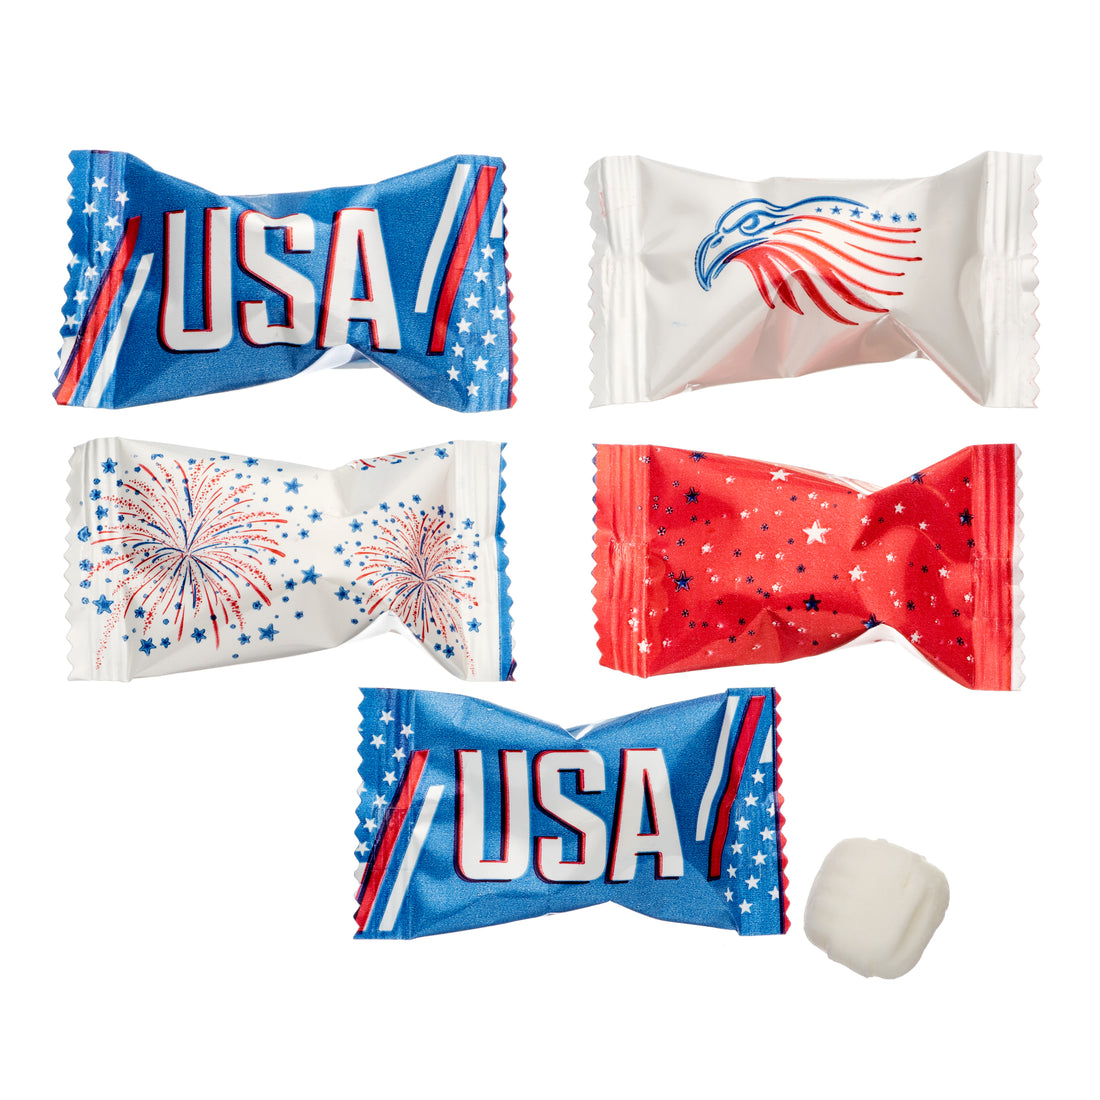 Patriotic USA Buttermints - 13 oz Bag